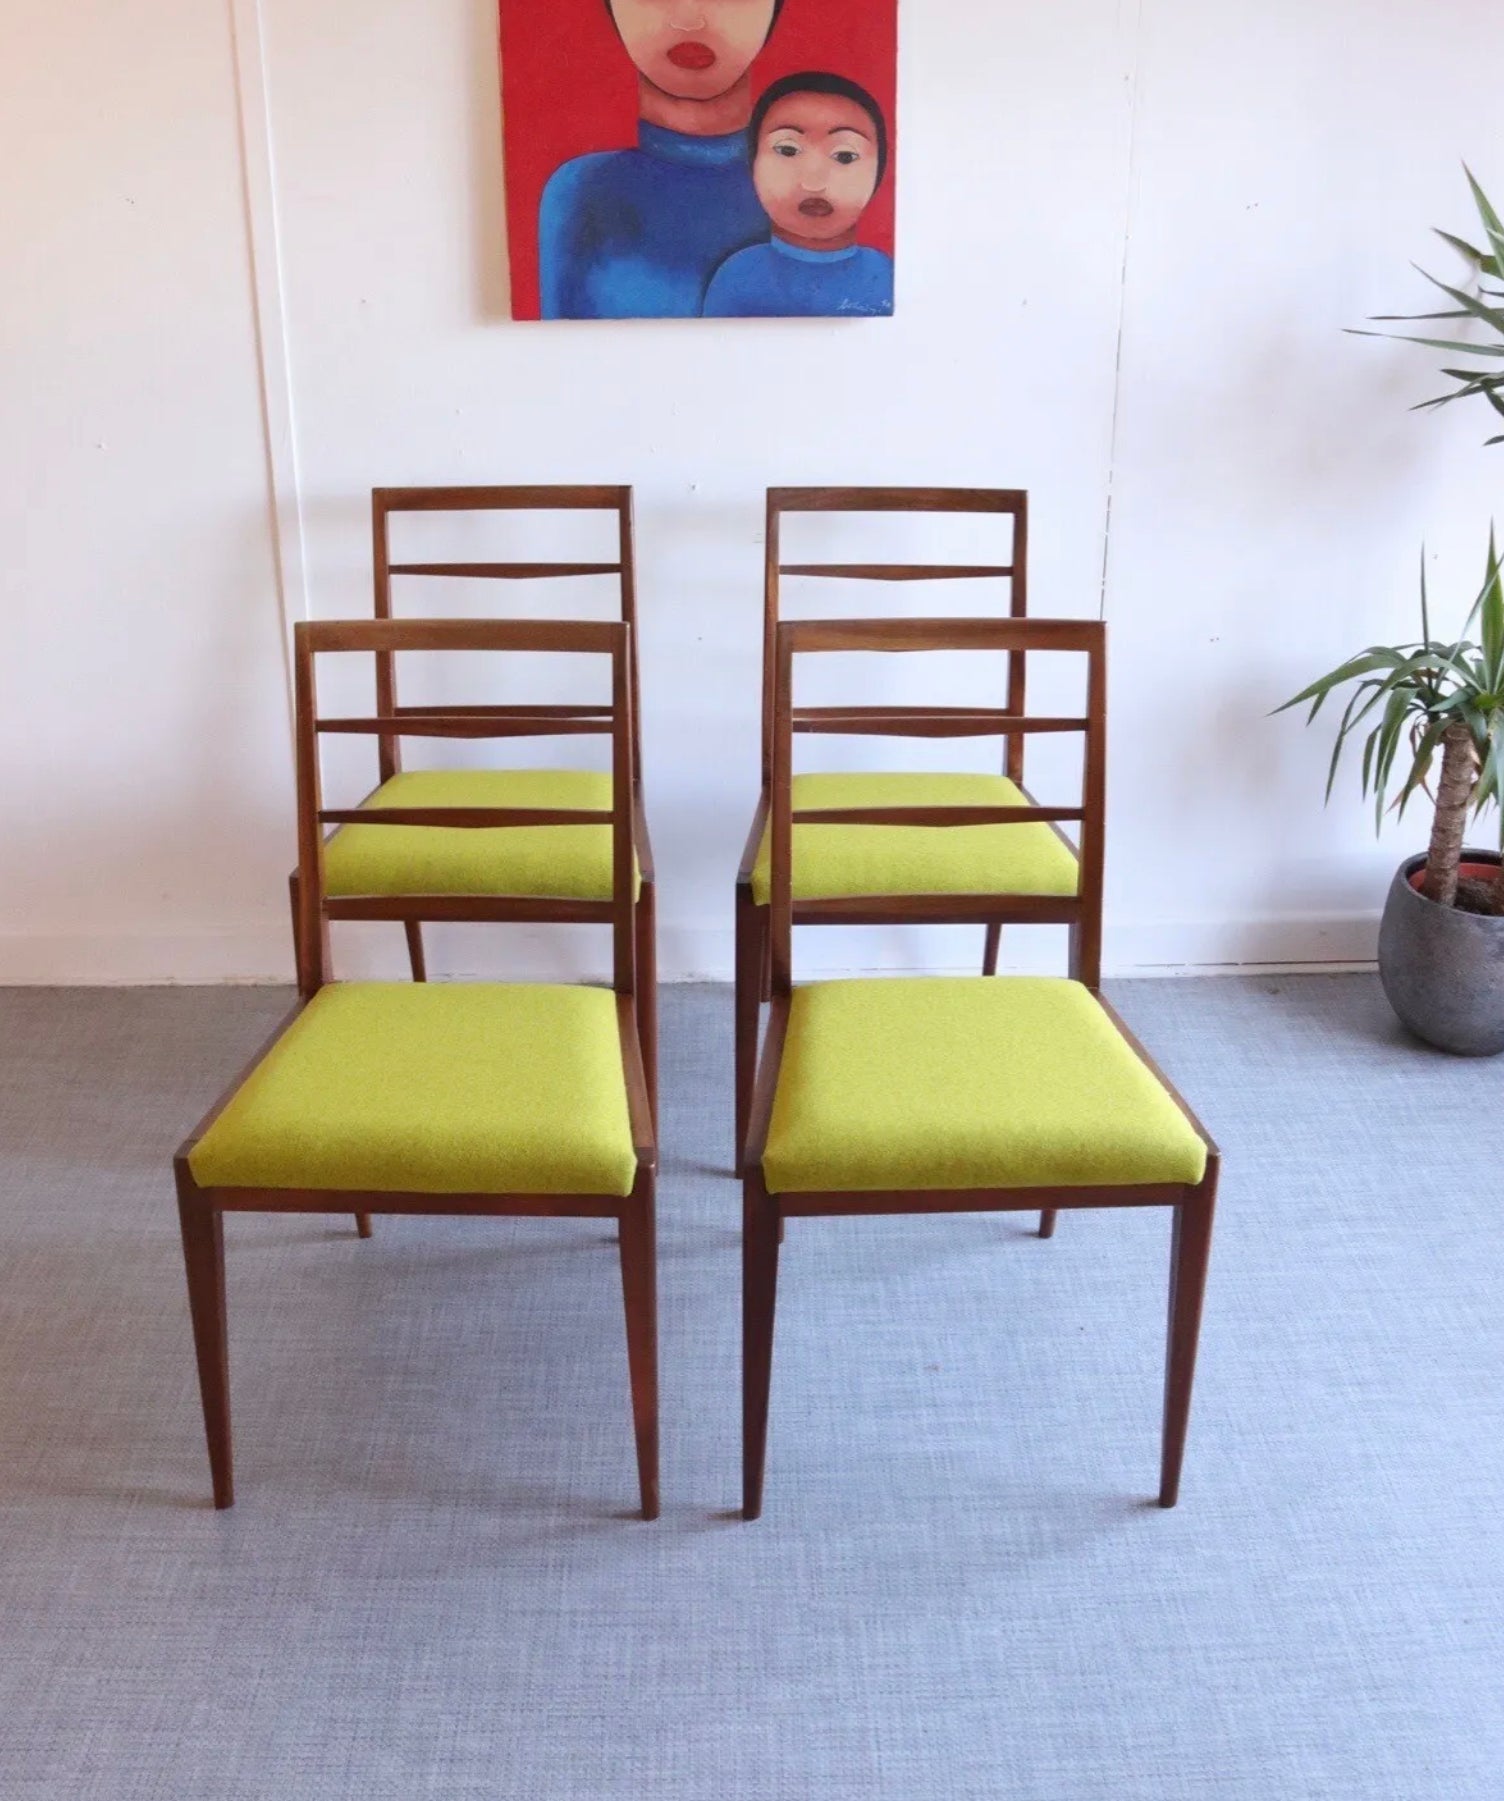 Set Of 4 McIntosh Mid Century Teak Dining Chairs Lime Wool Upholstery Retro - teakyfinders